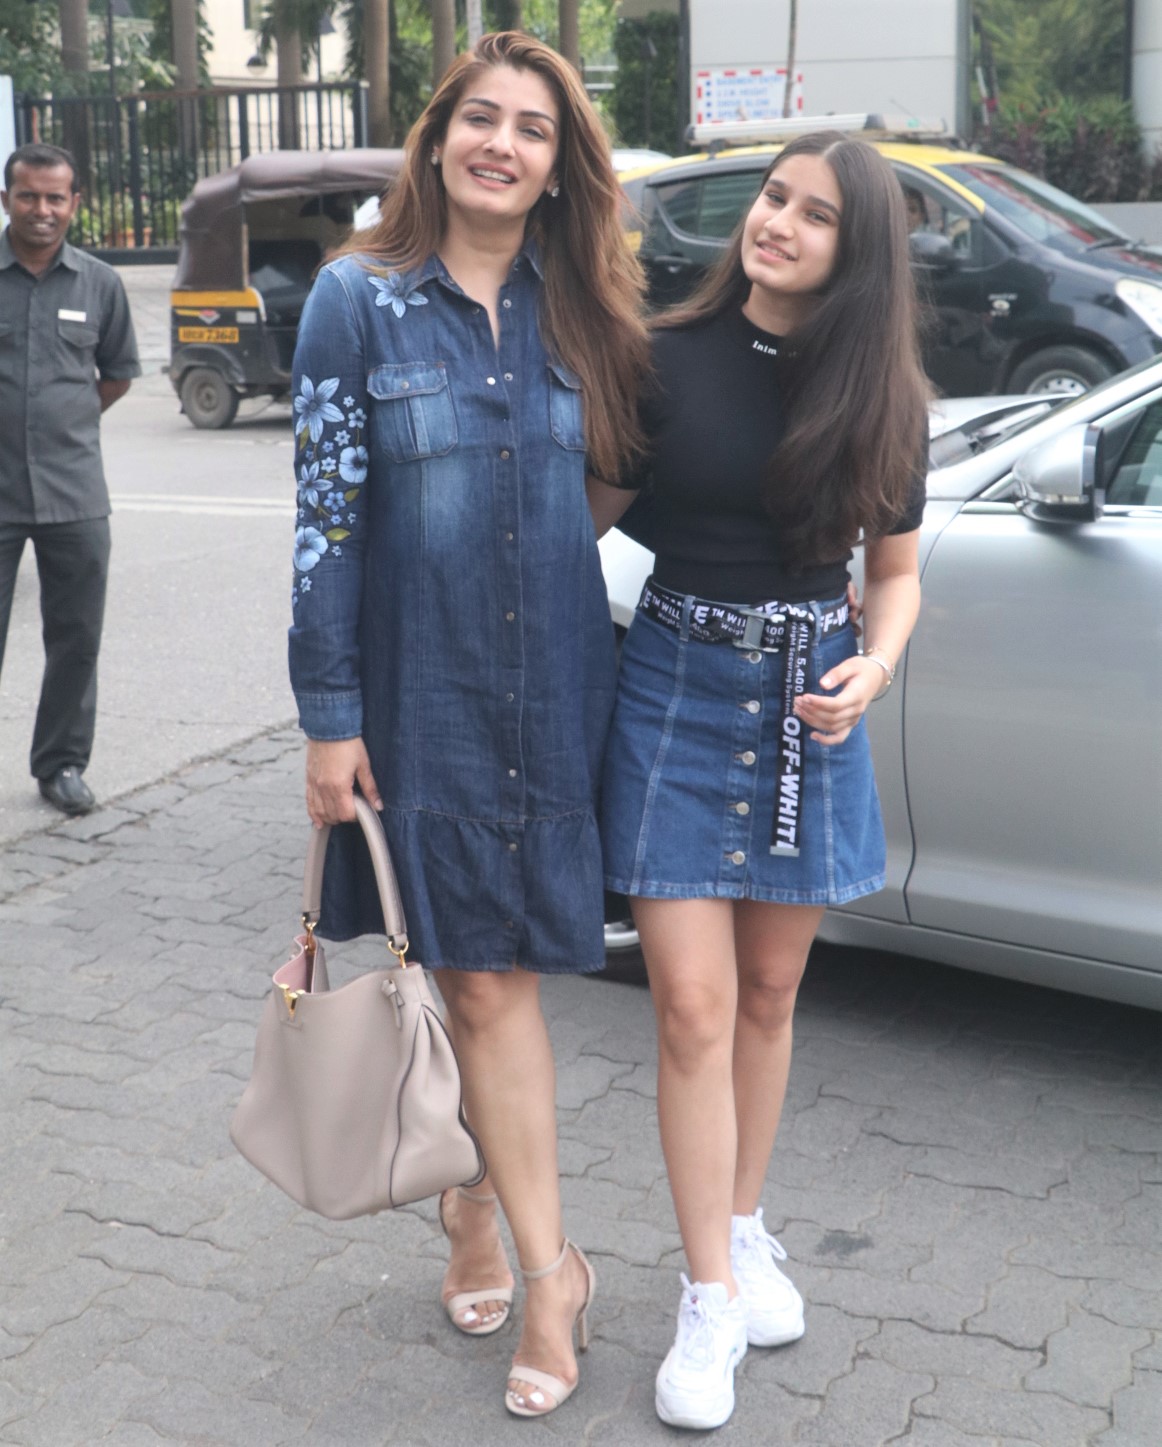 रवीना टंडन और उनकी बेटी राशा ट्विन डेनिम में लंच डेट के लिए बाहर निकलती हैं - Masala.com